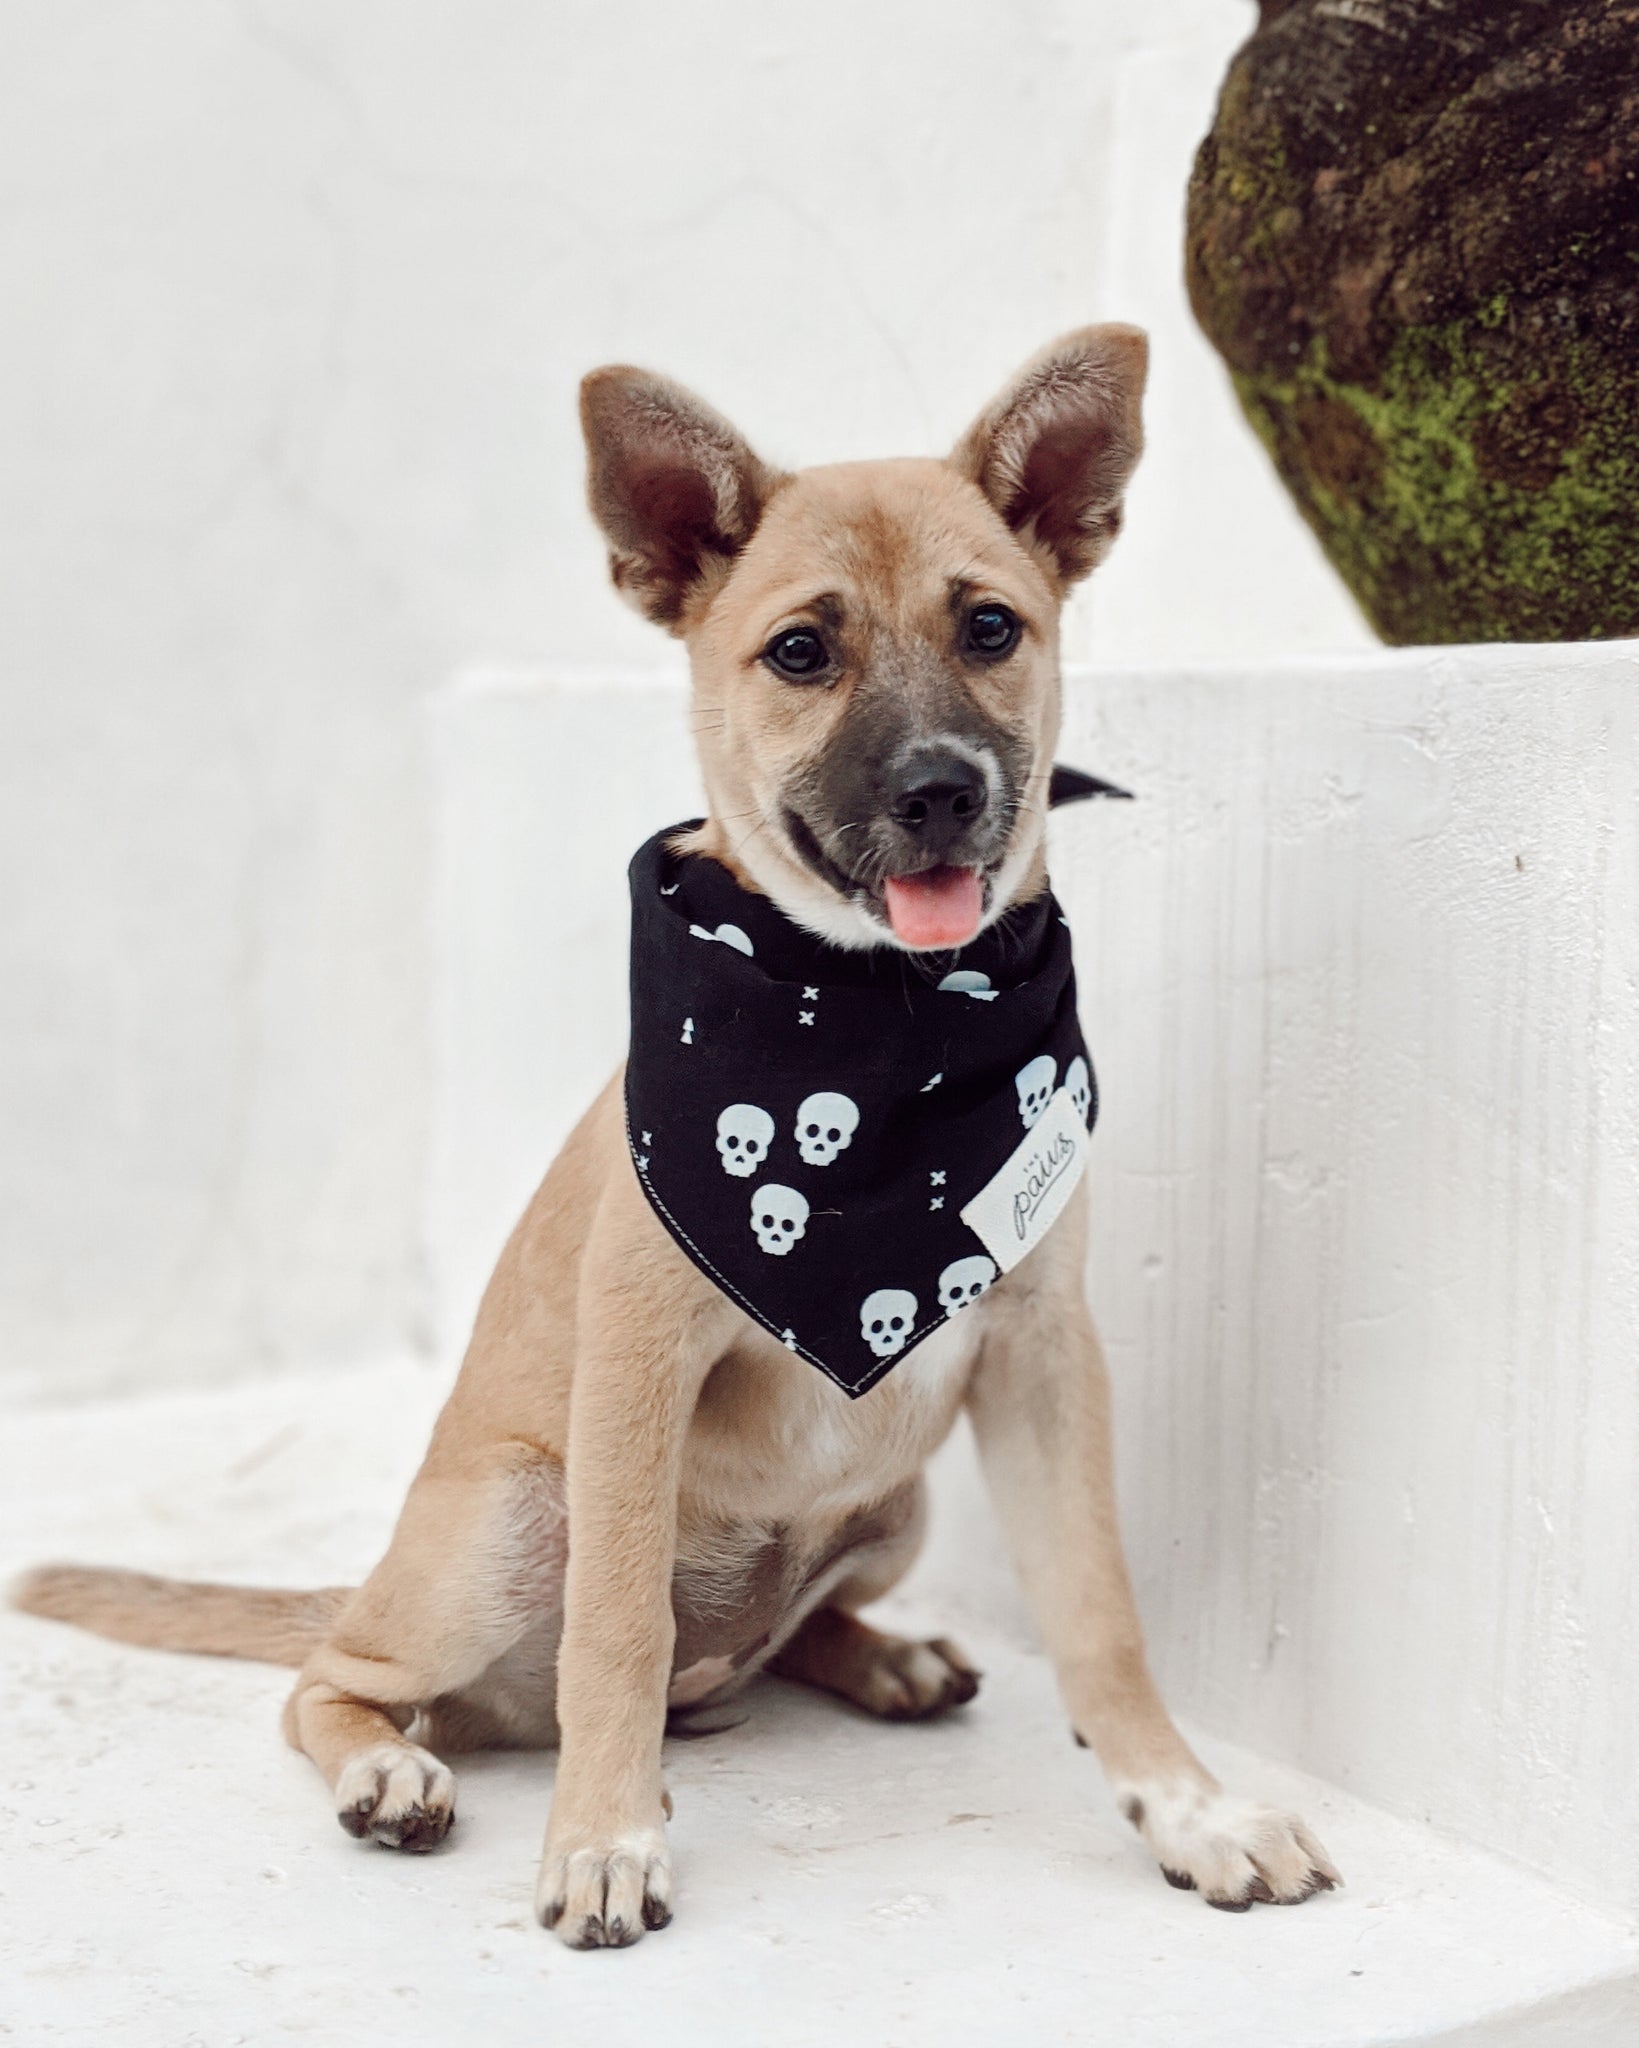 One Eyed Honey dog bandana worn by a rescue dog